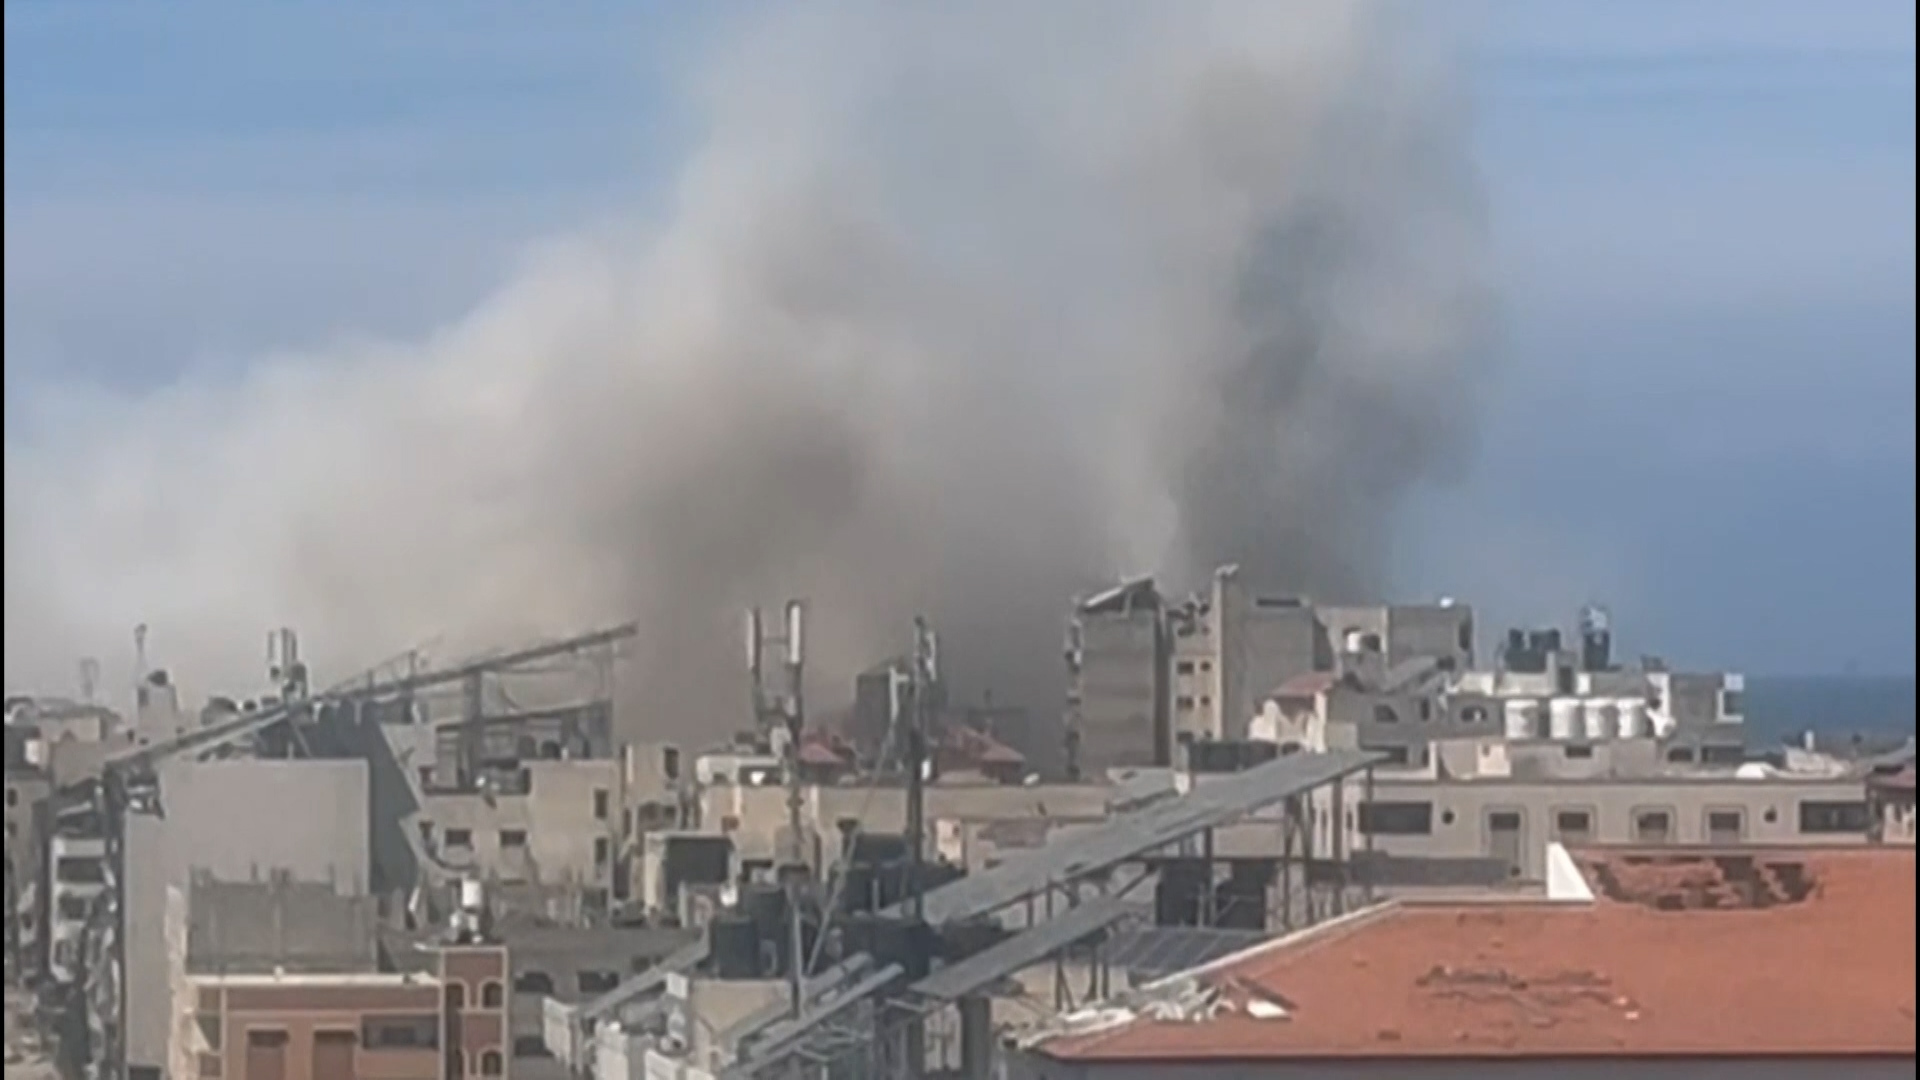 صحفي للجزيرة: القصف الإسرائيلي المتواصل يحتجز 295 فردا بمبنى أممي بغزة | أخبار التقارير الإخبارية – البوكس نيوز